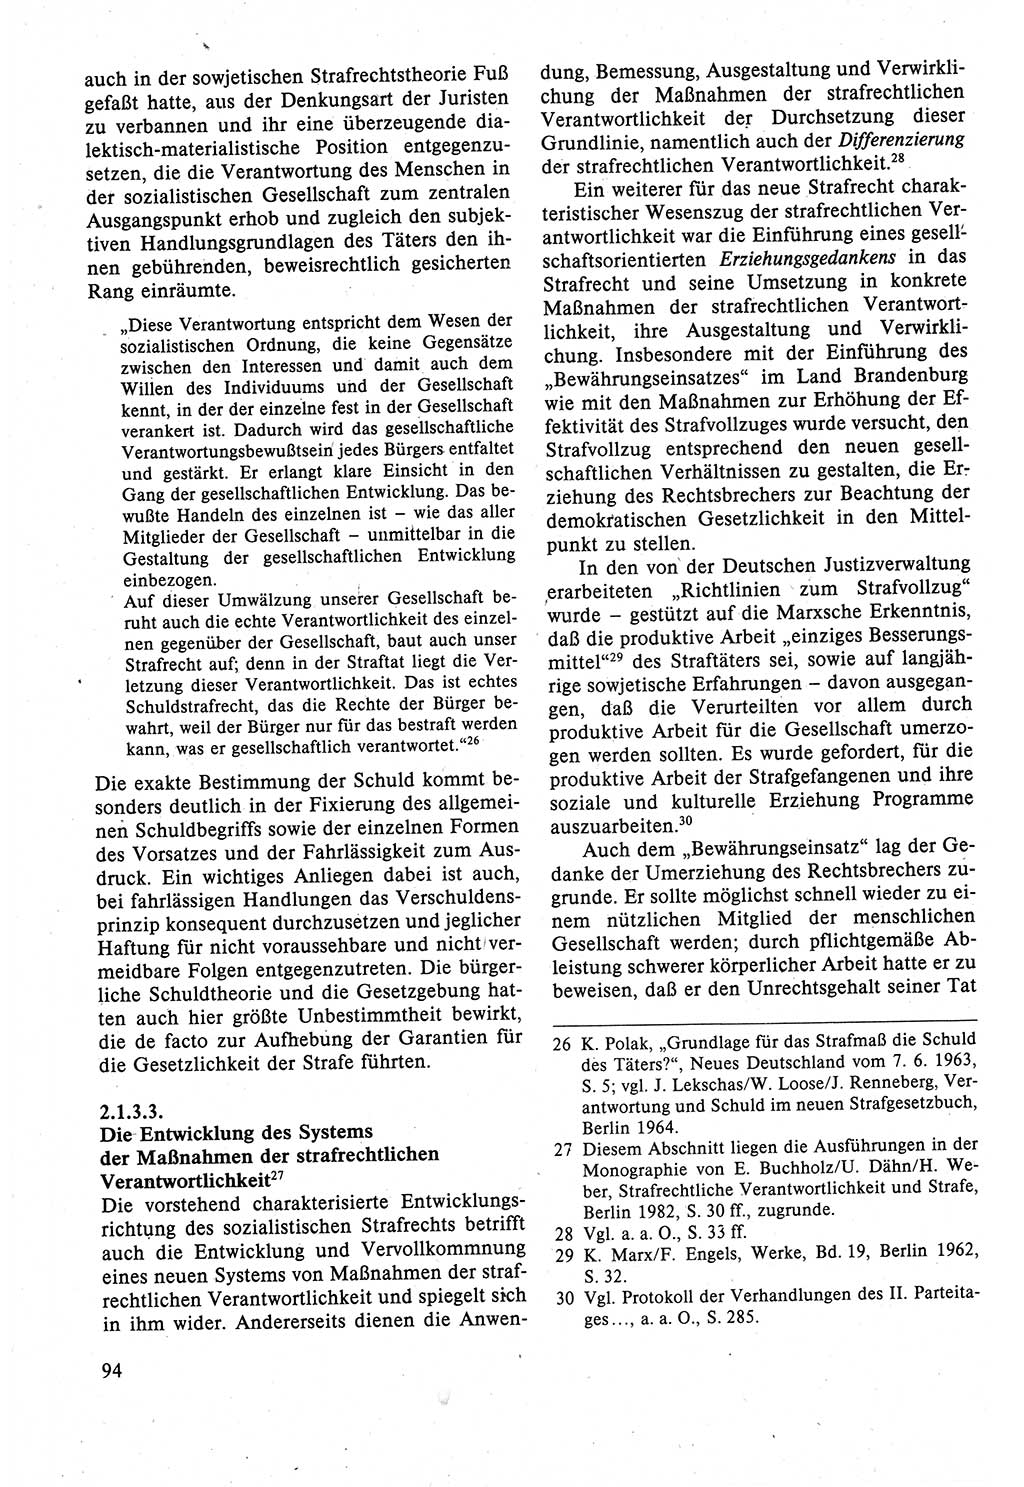 Strafrecht der DDR (Deutsche Demokratische Republik), Lehrbuch 1988, Seite 94 (Strafr. DDR Lb. 1988, S. 94)